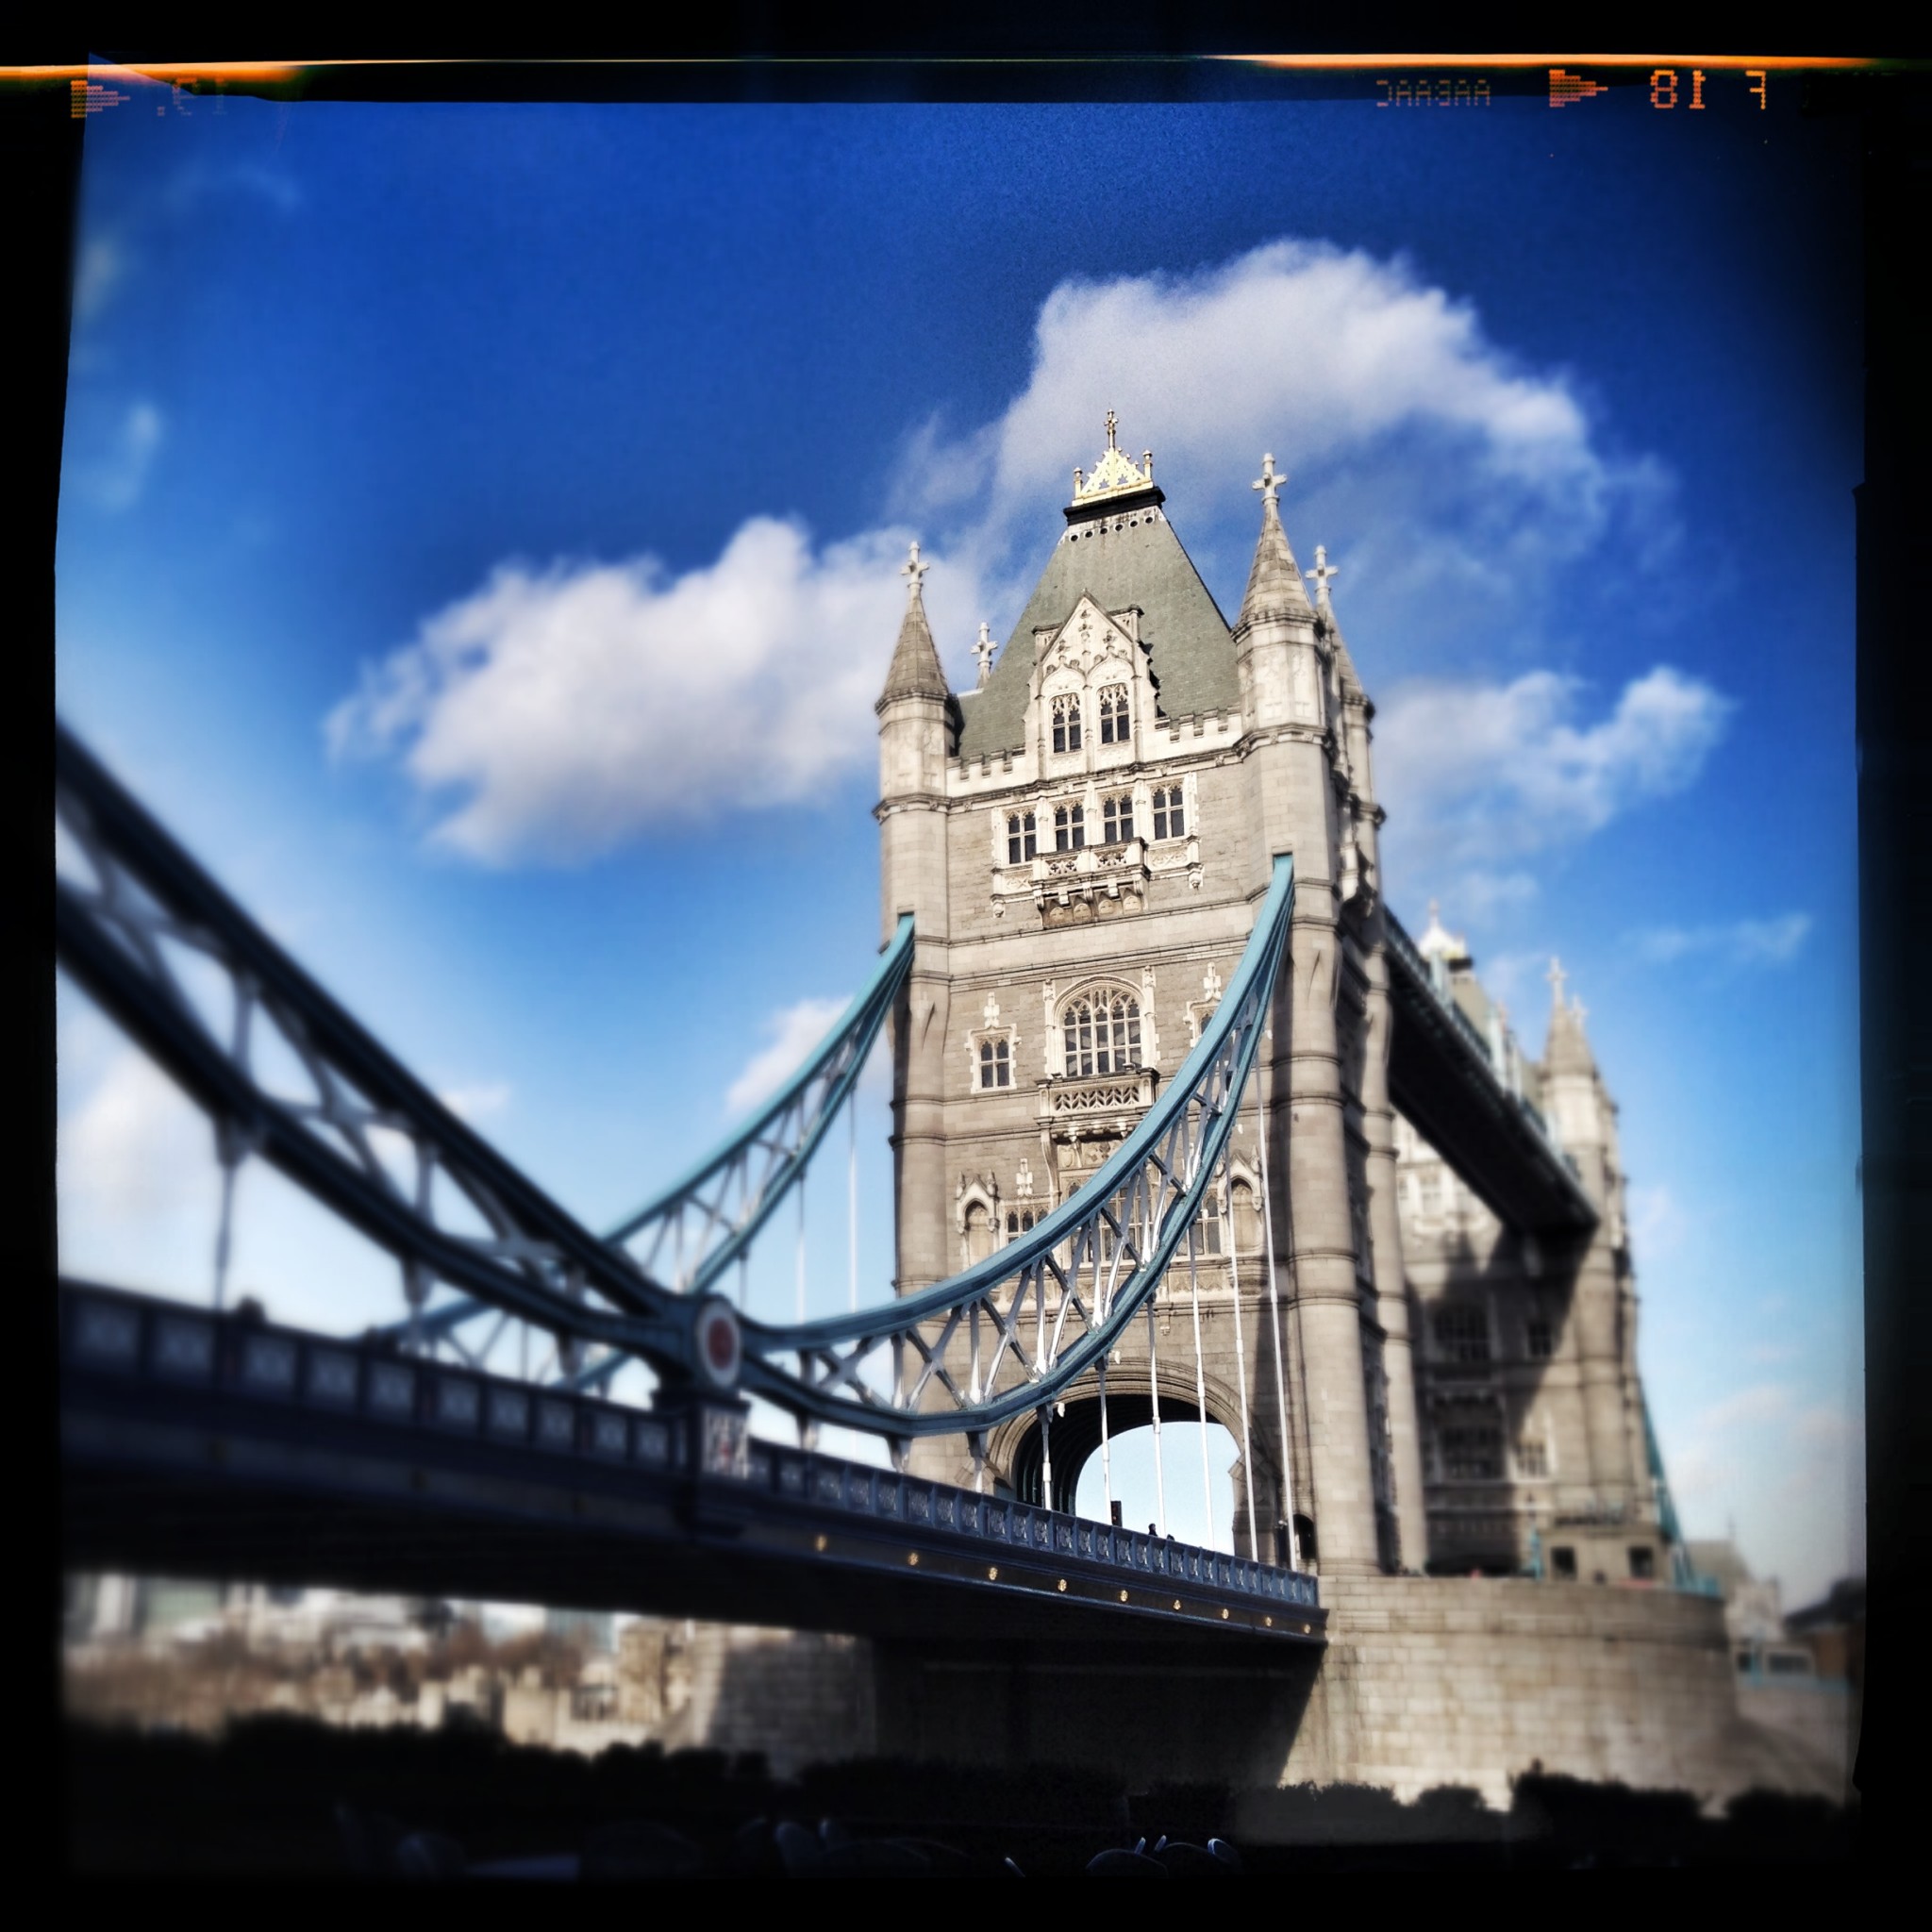 London Bridge by Laurent Reich